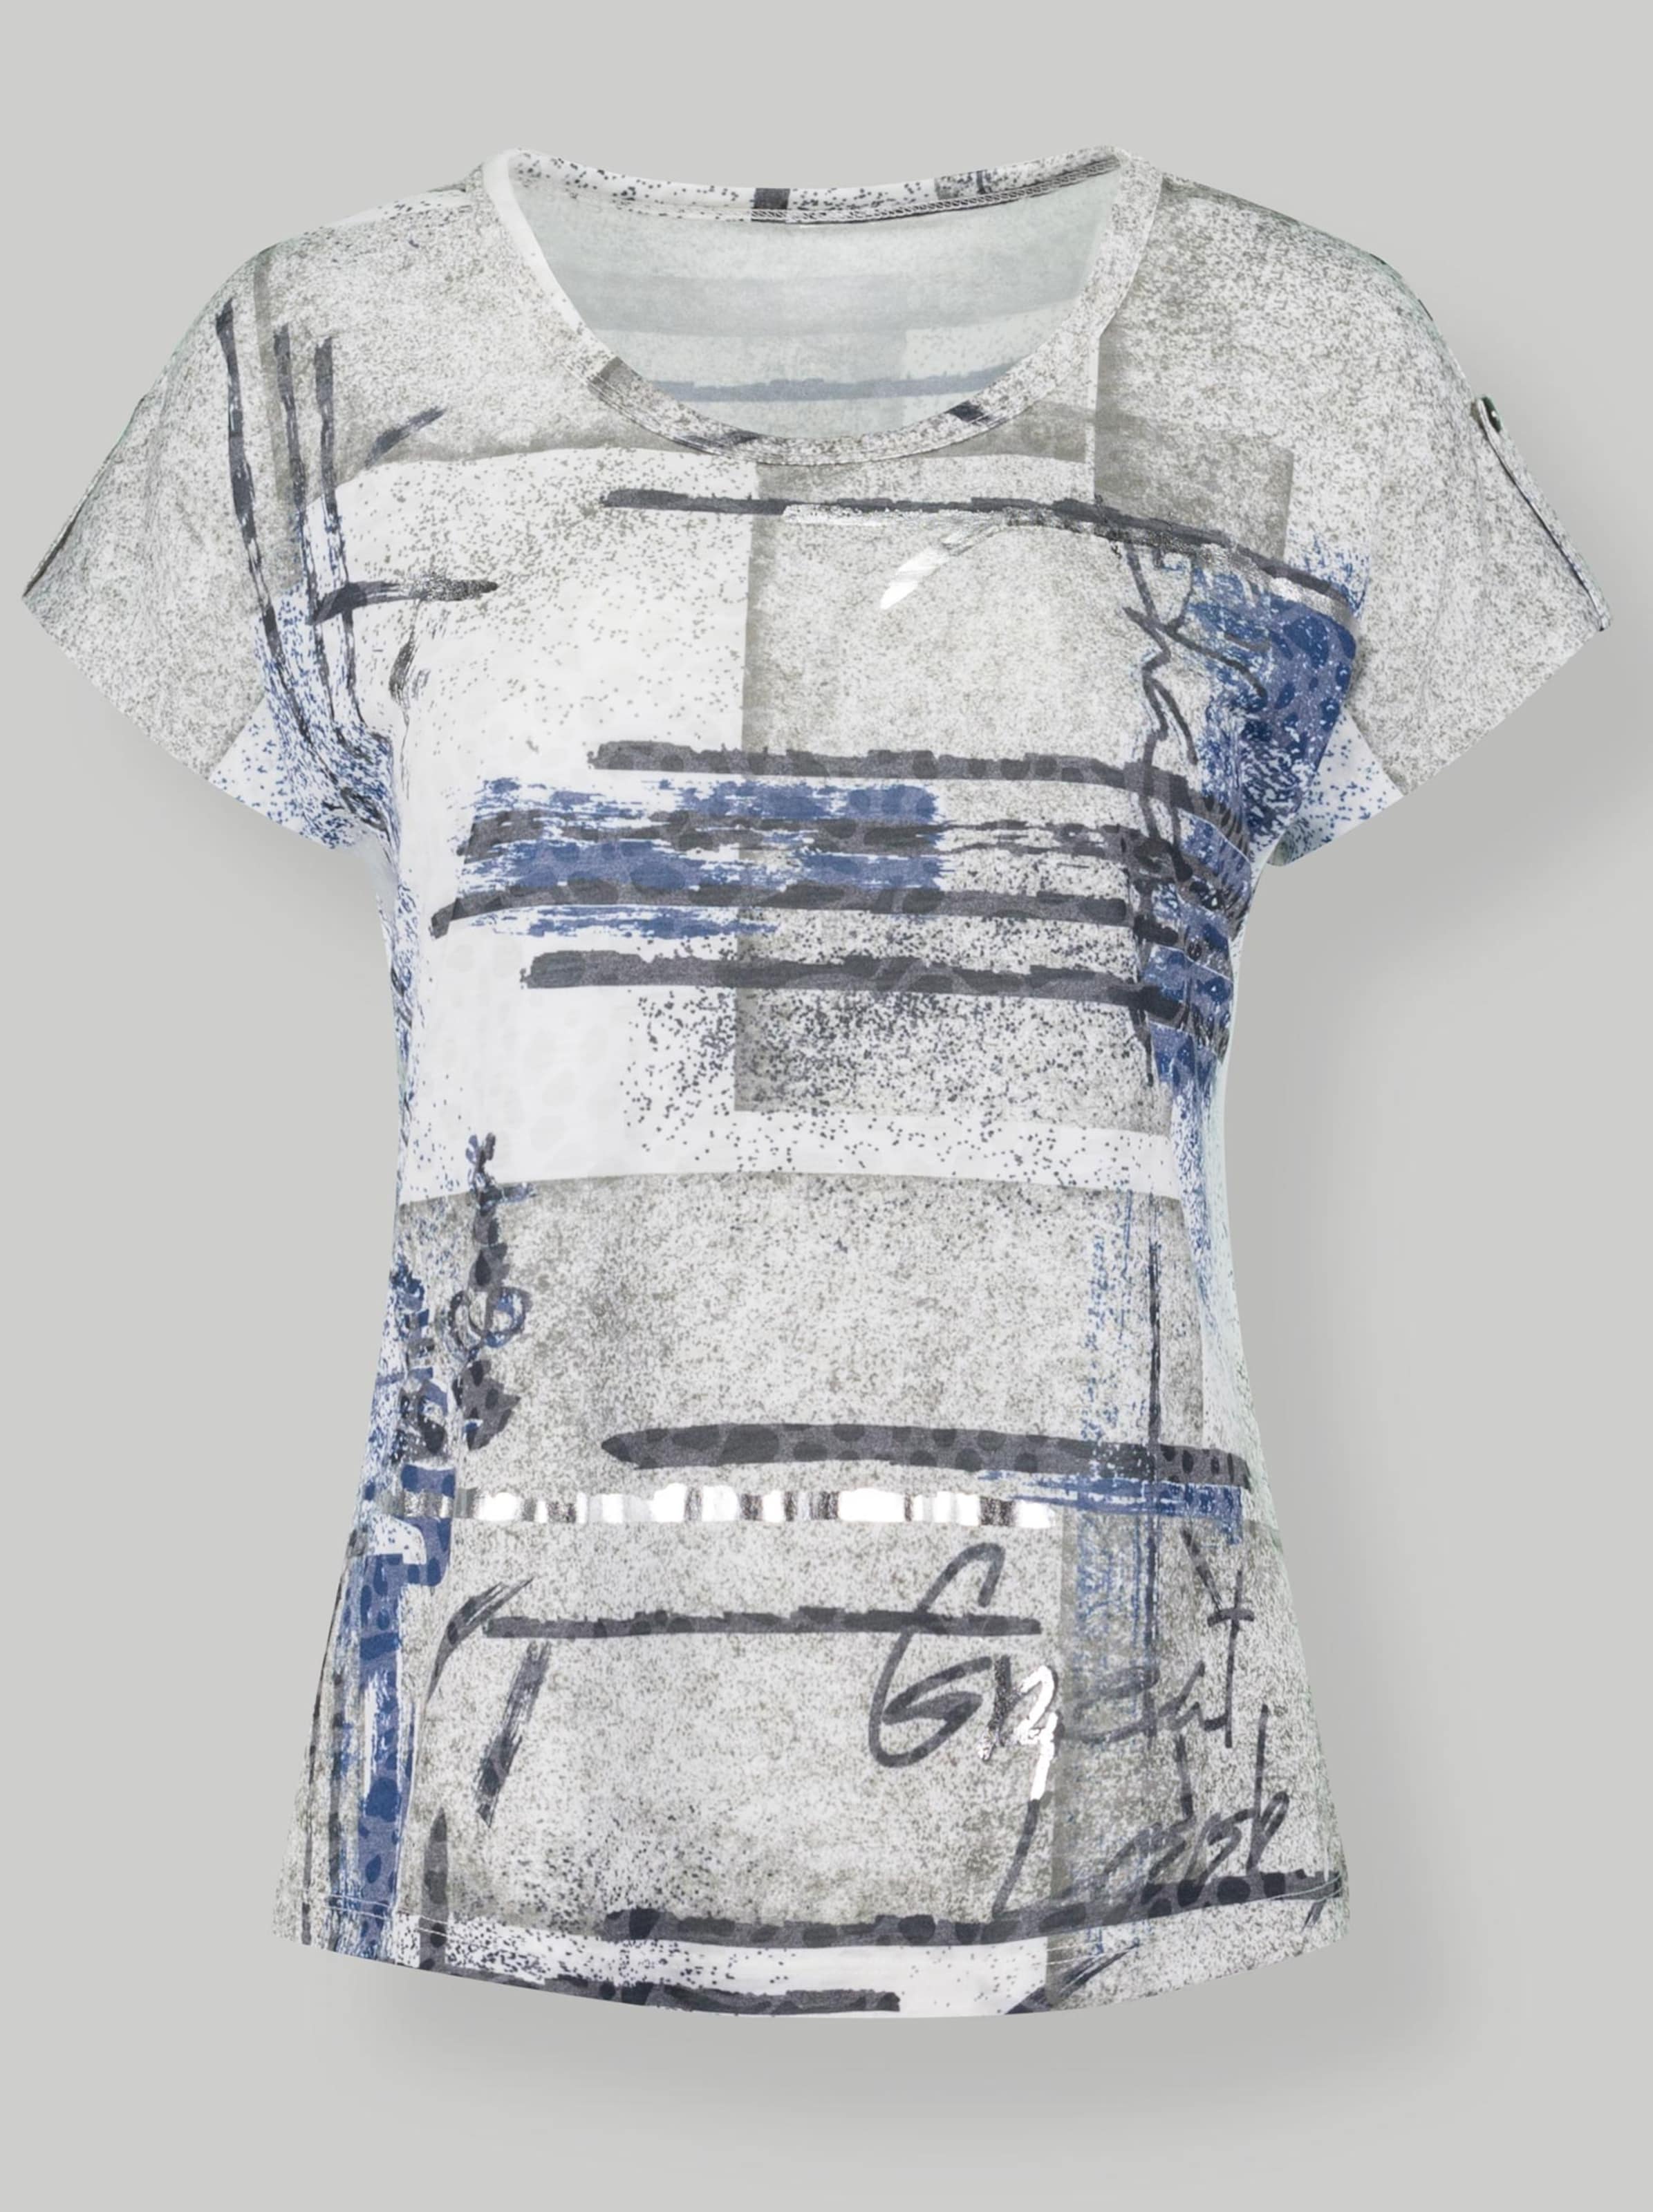 Damenmode Shirts Rundhalsshirt in weiß-blau-bedruckt 